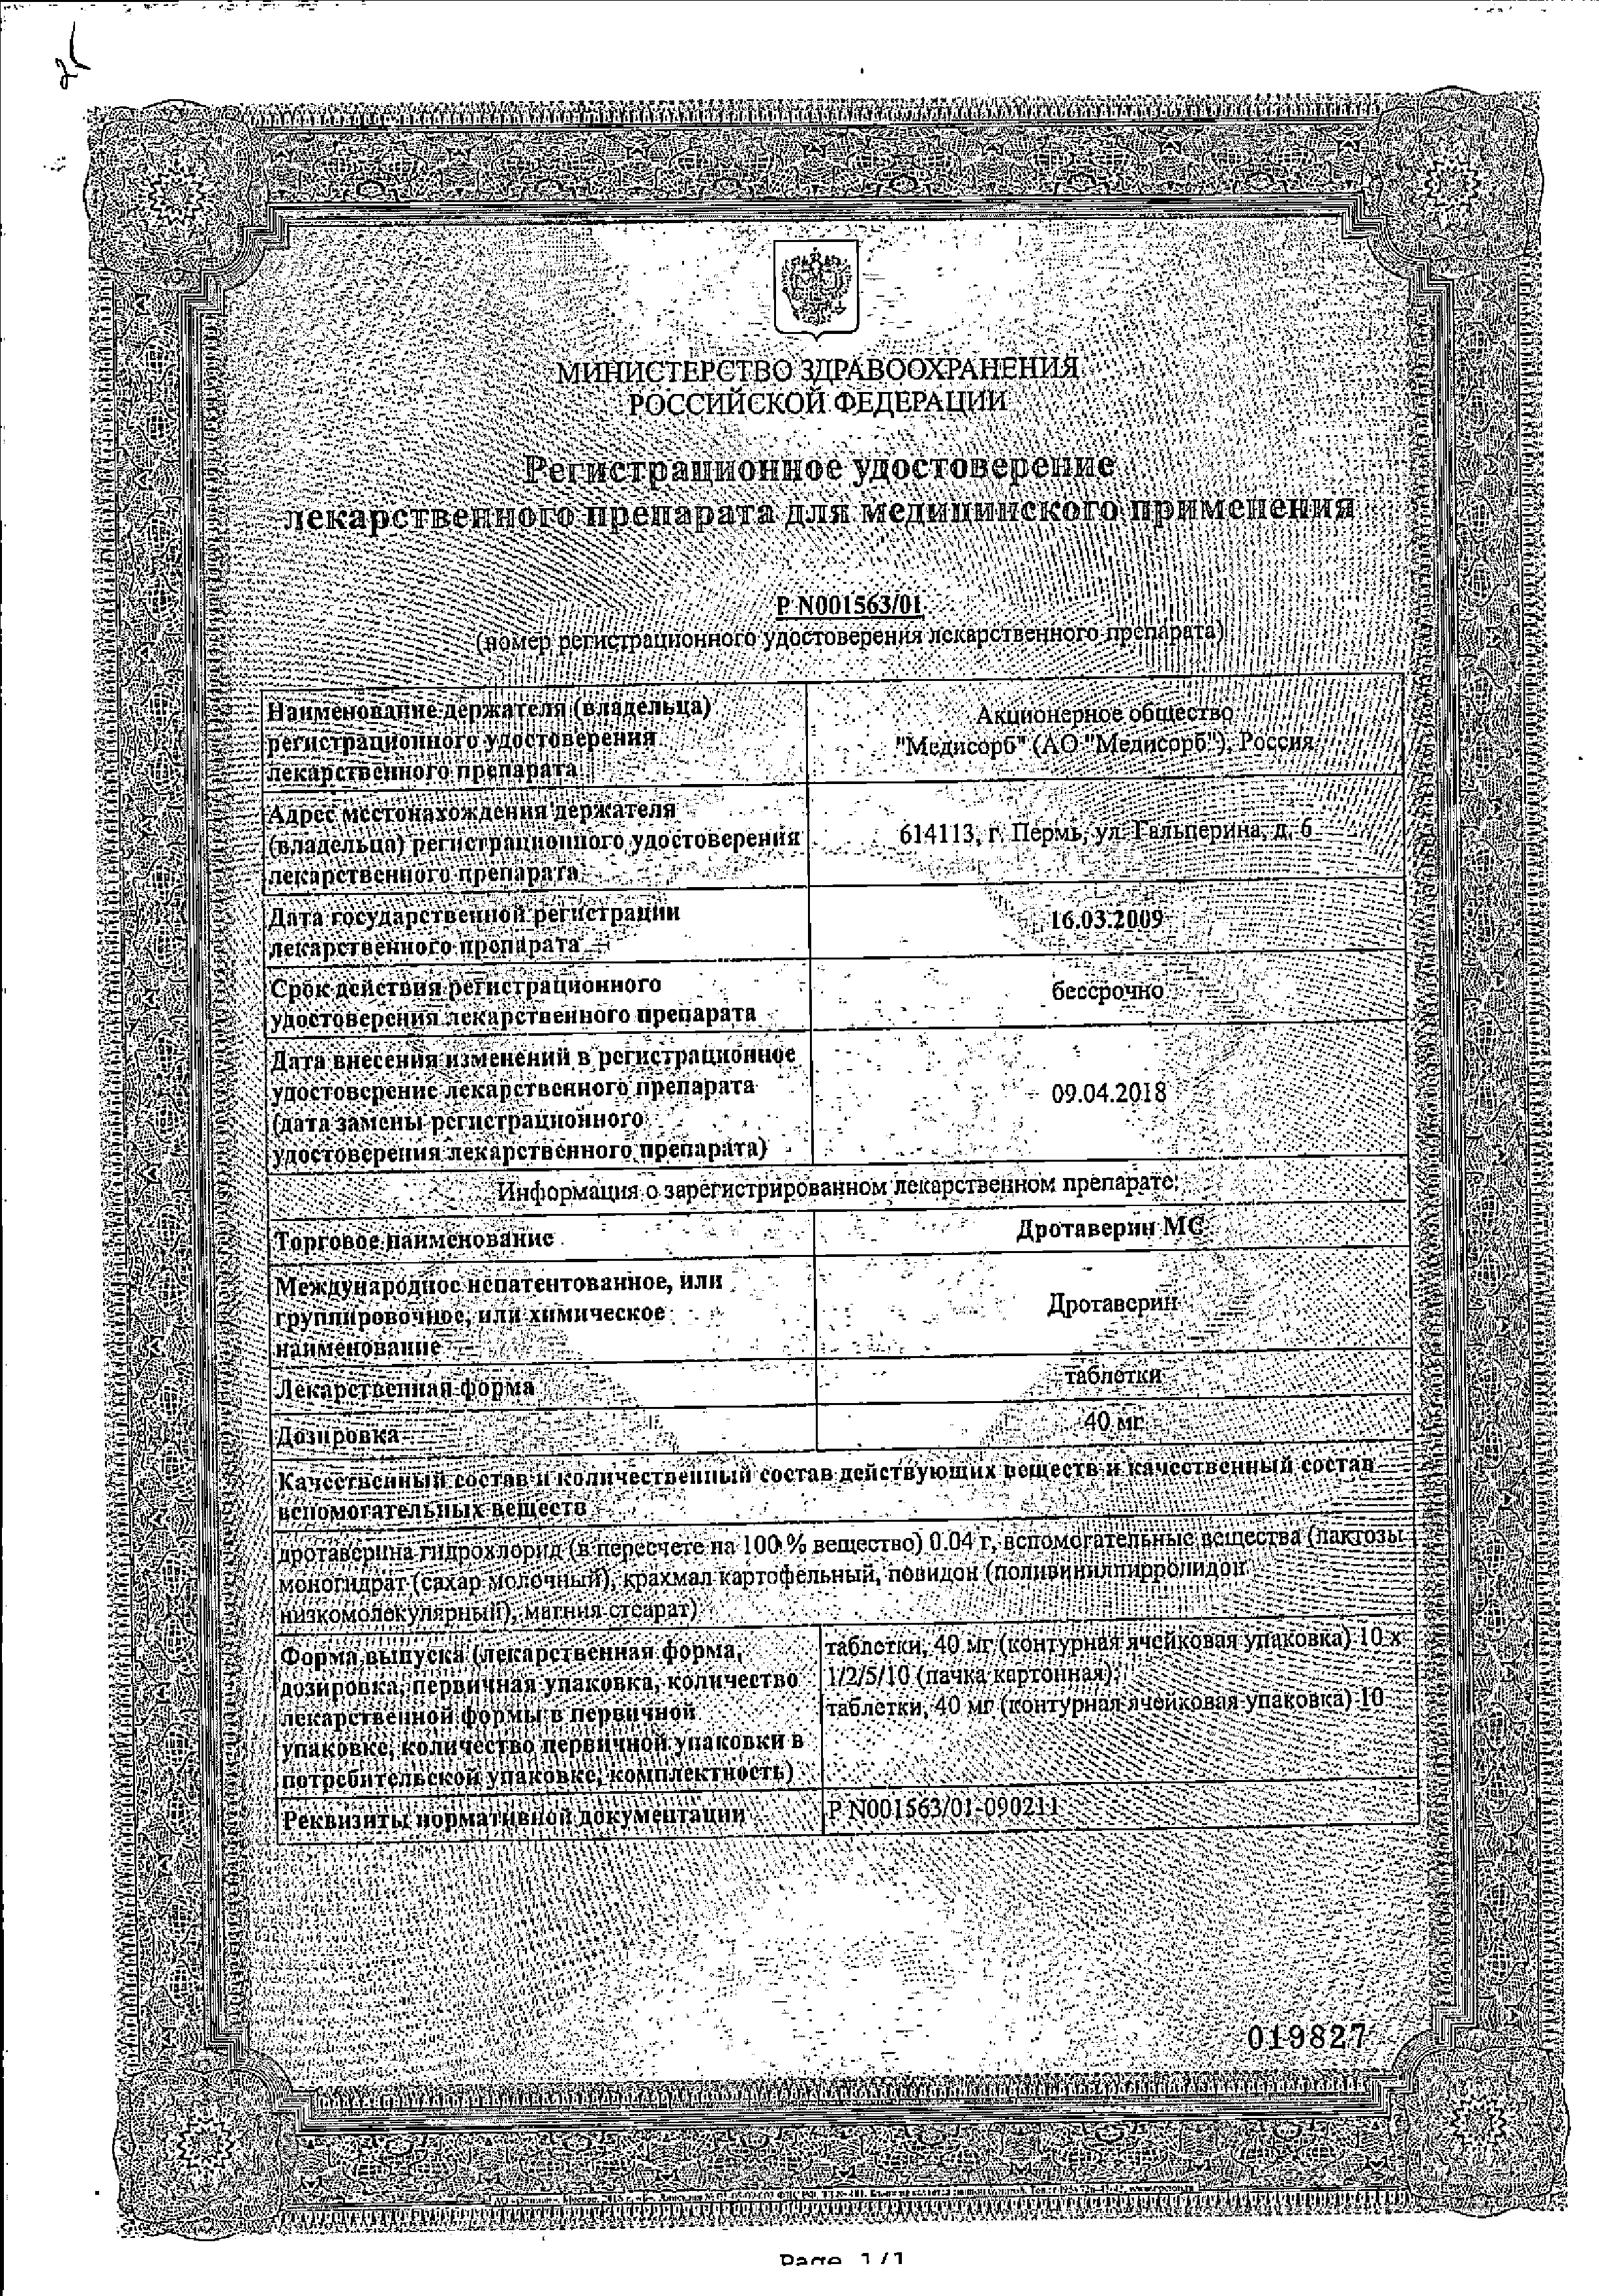 Дротаверин МС сертификат